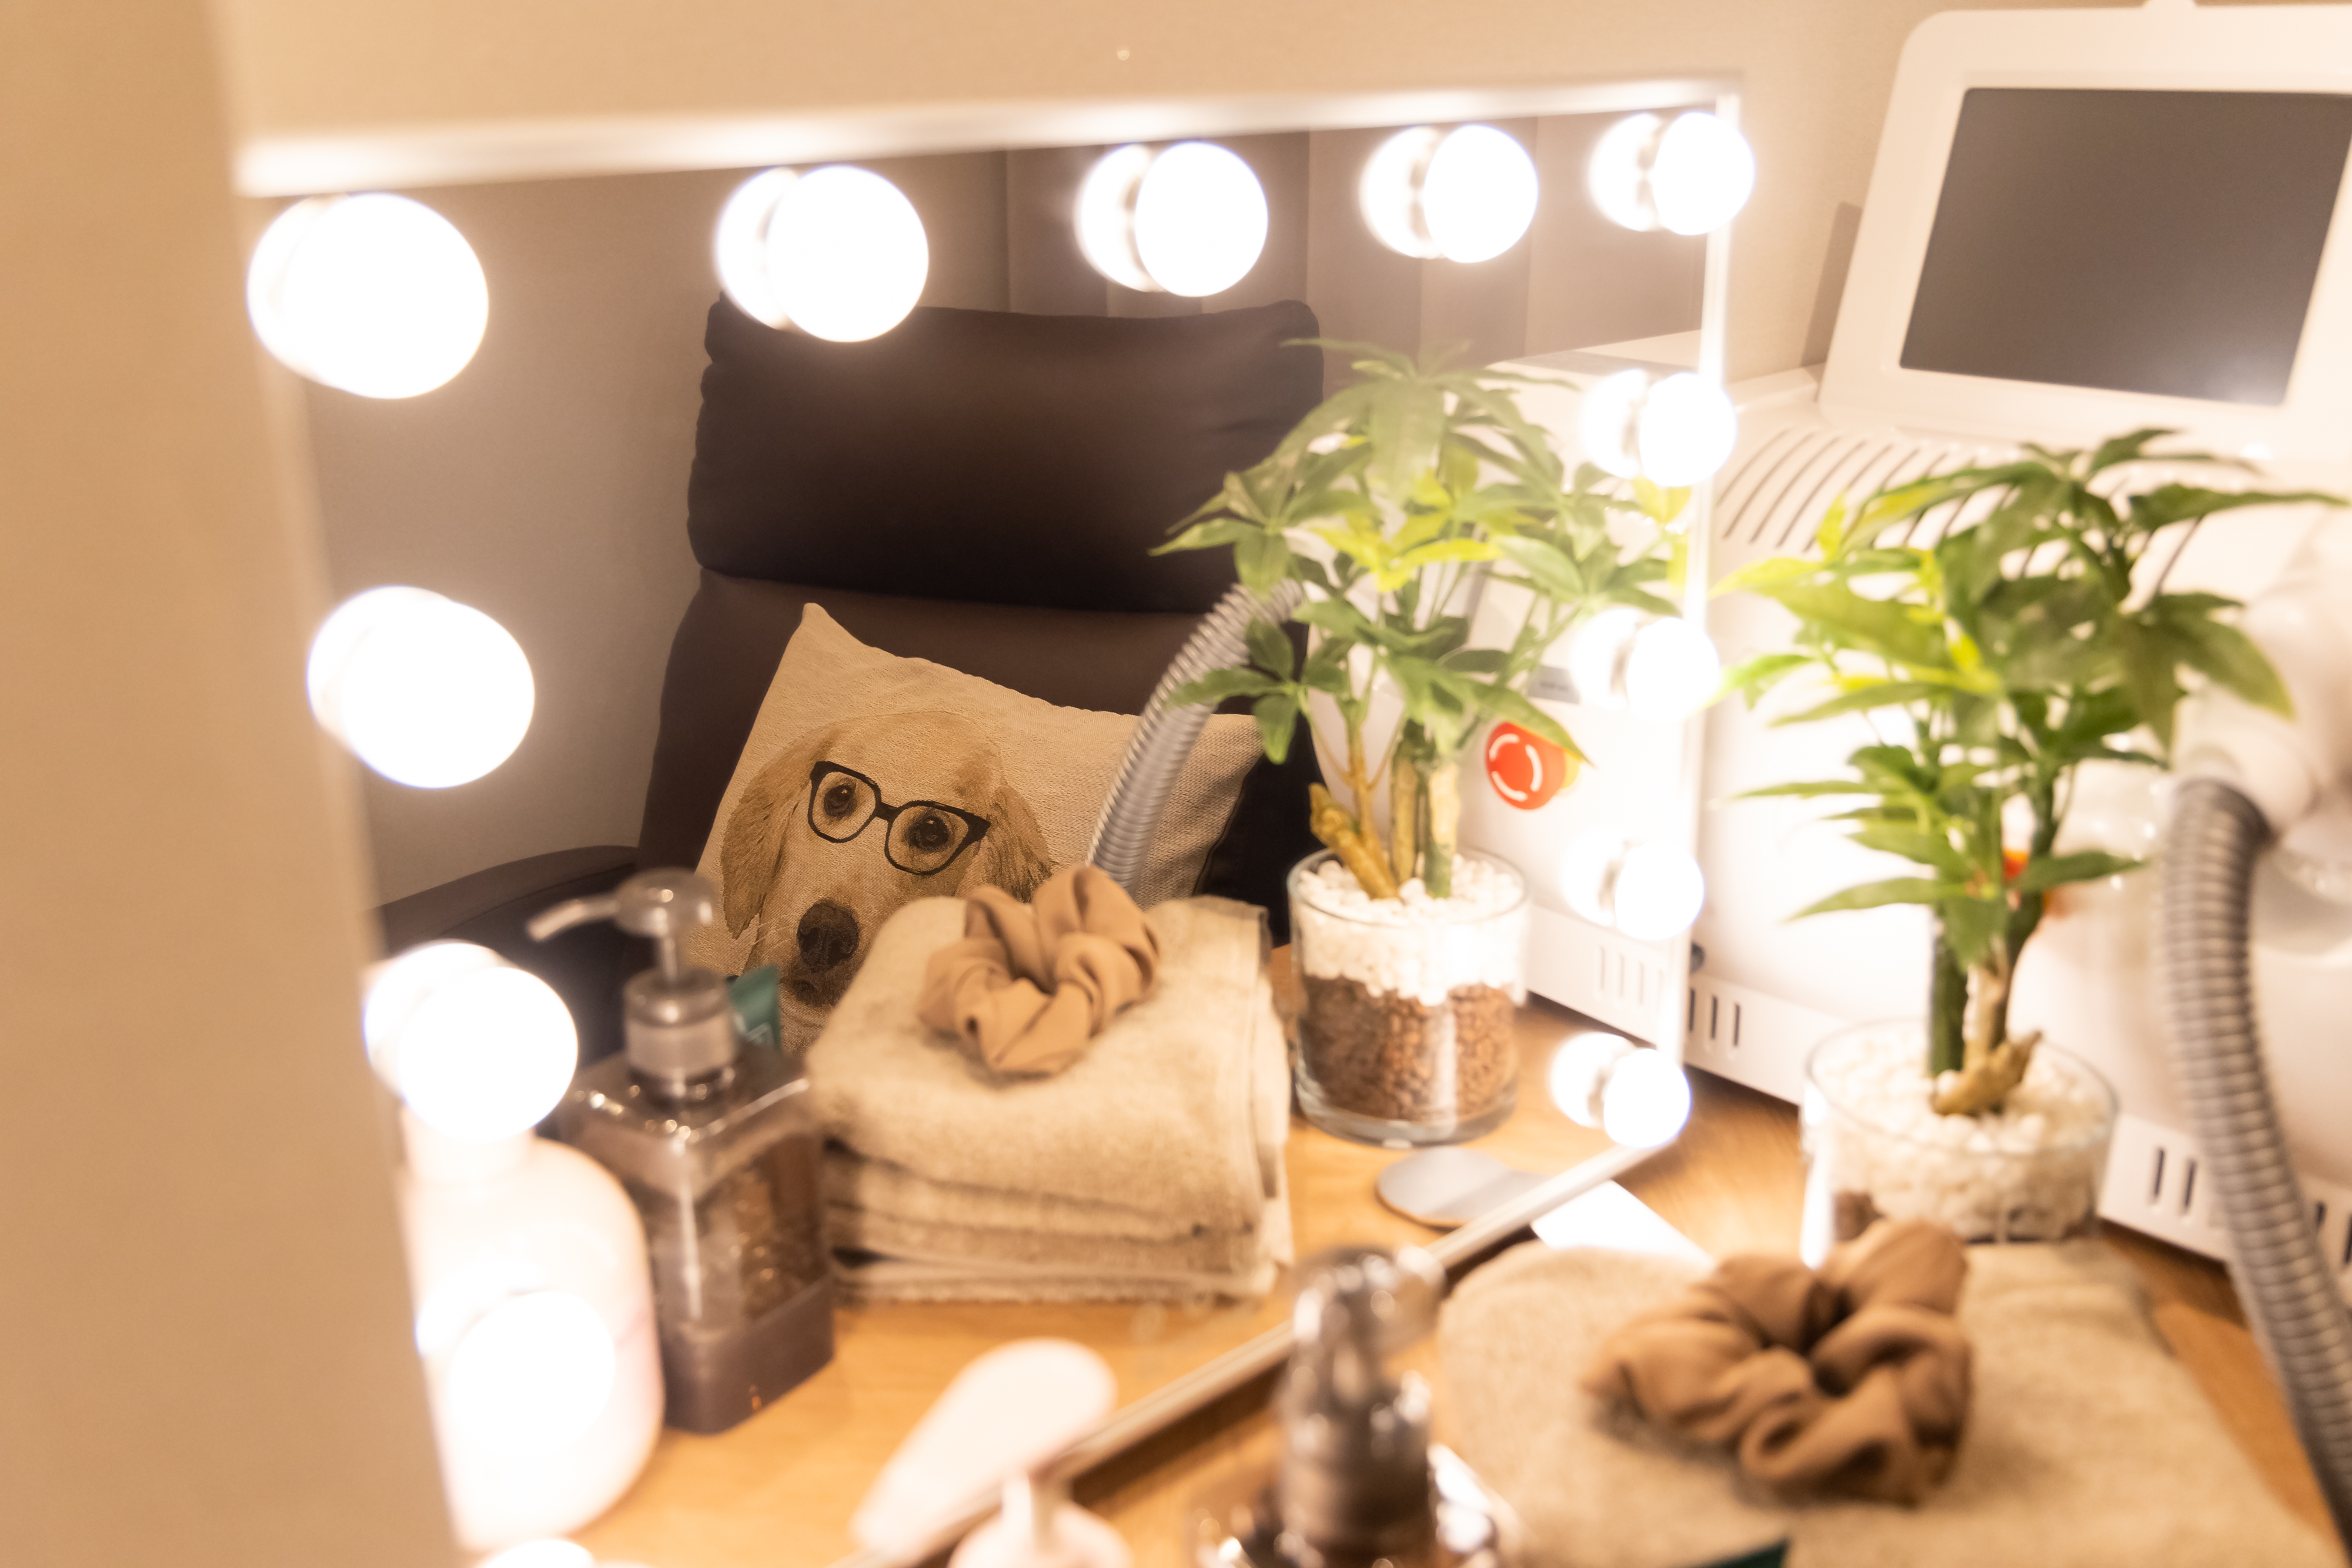 鏡台の鏡にソファと犬のイラストのクッションが映り込み、鏡台の上に様々な美容用品やタオル、シュシュ、観葉植物、フォトフェイシャルの機器が置いてある画像